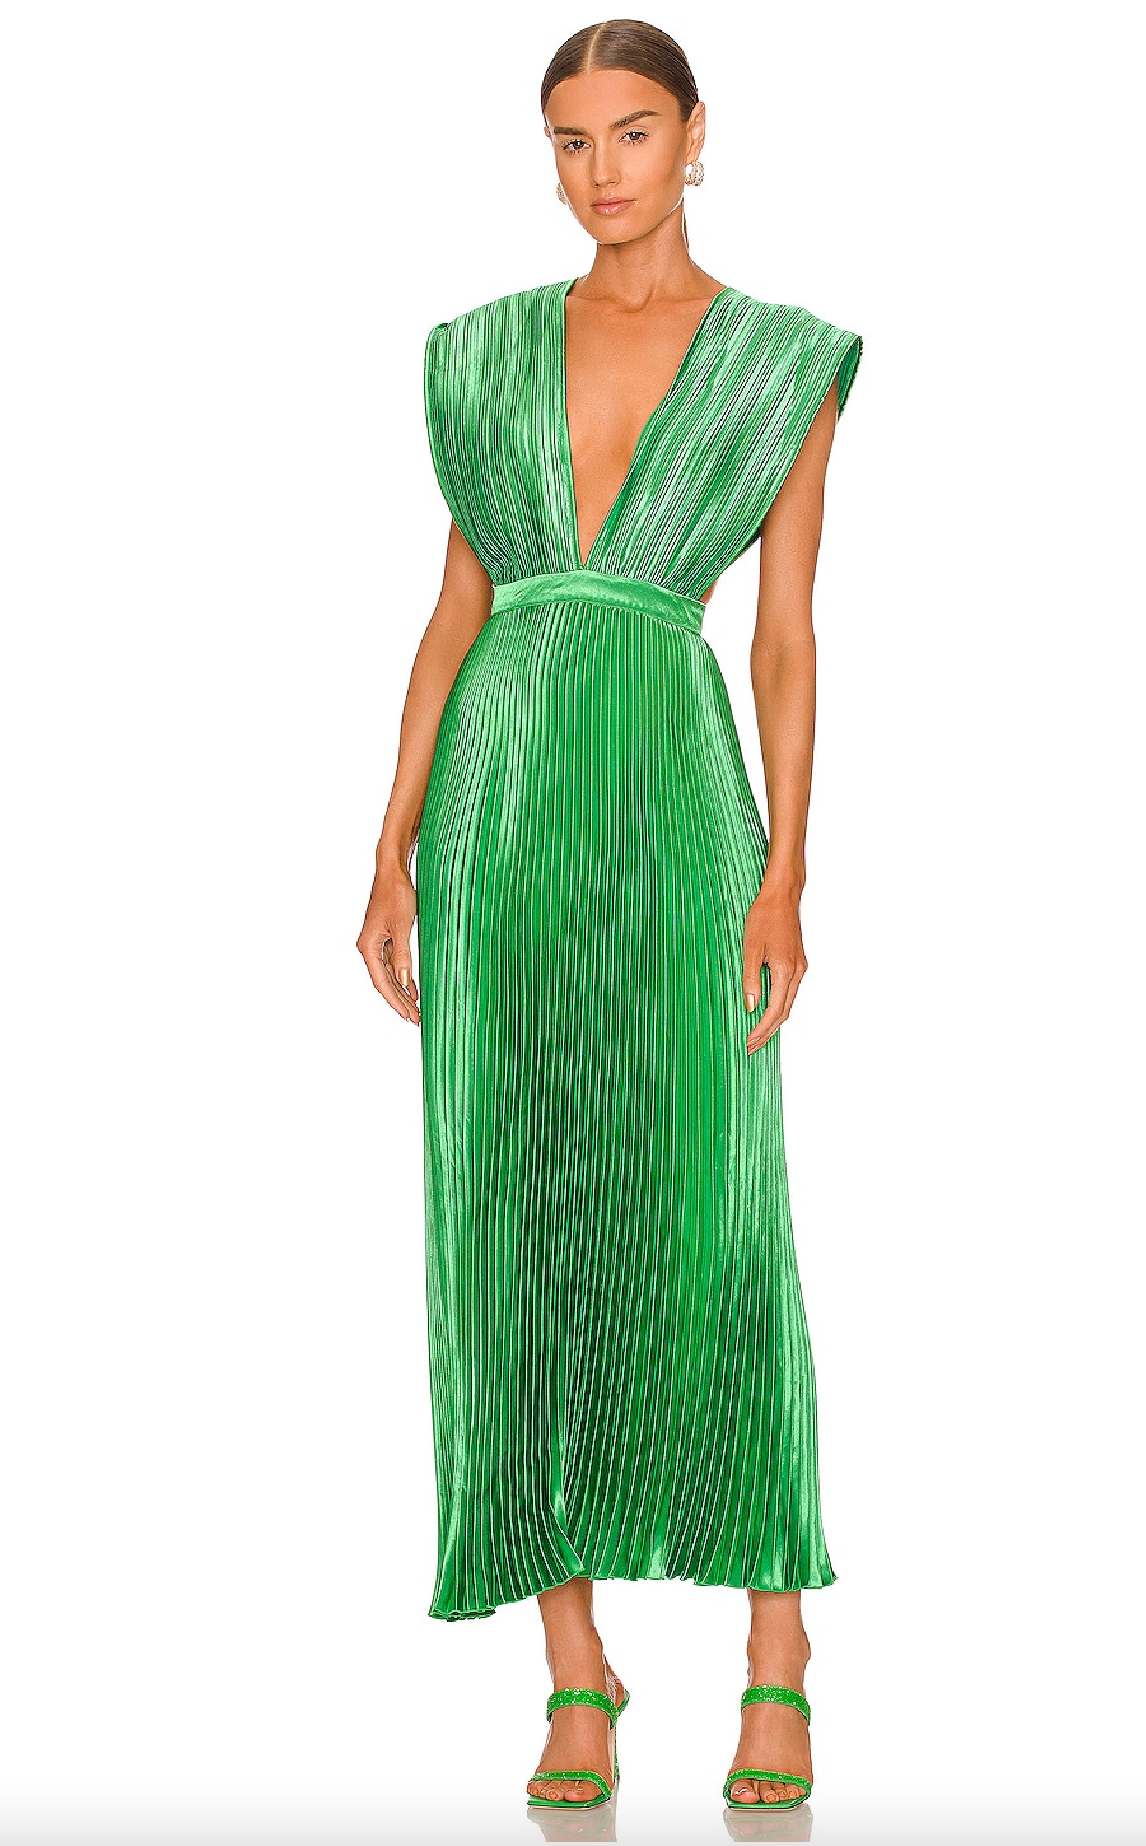 FINAL SALE* L'idee - Gala Midi Dress - Bright Green